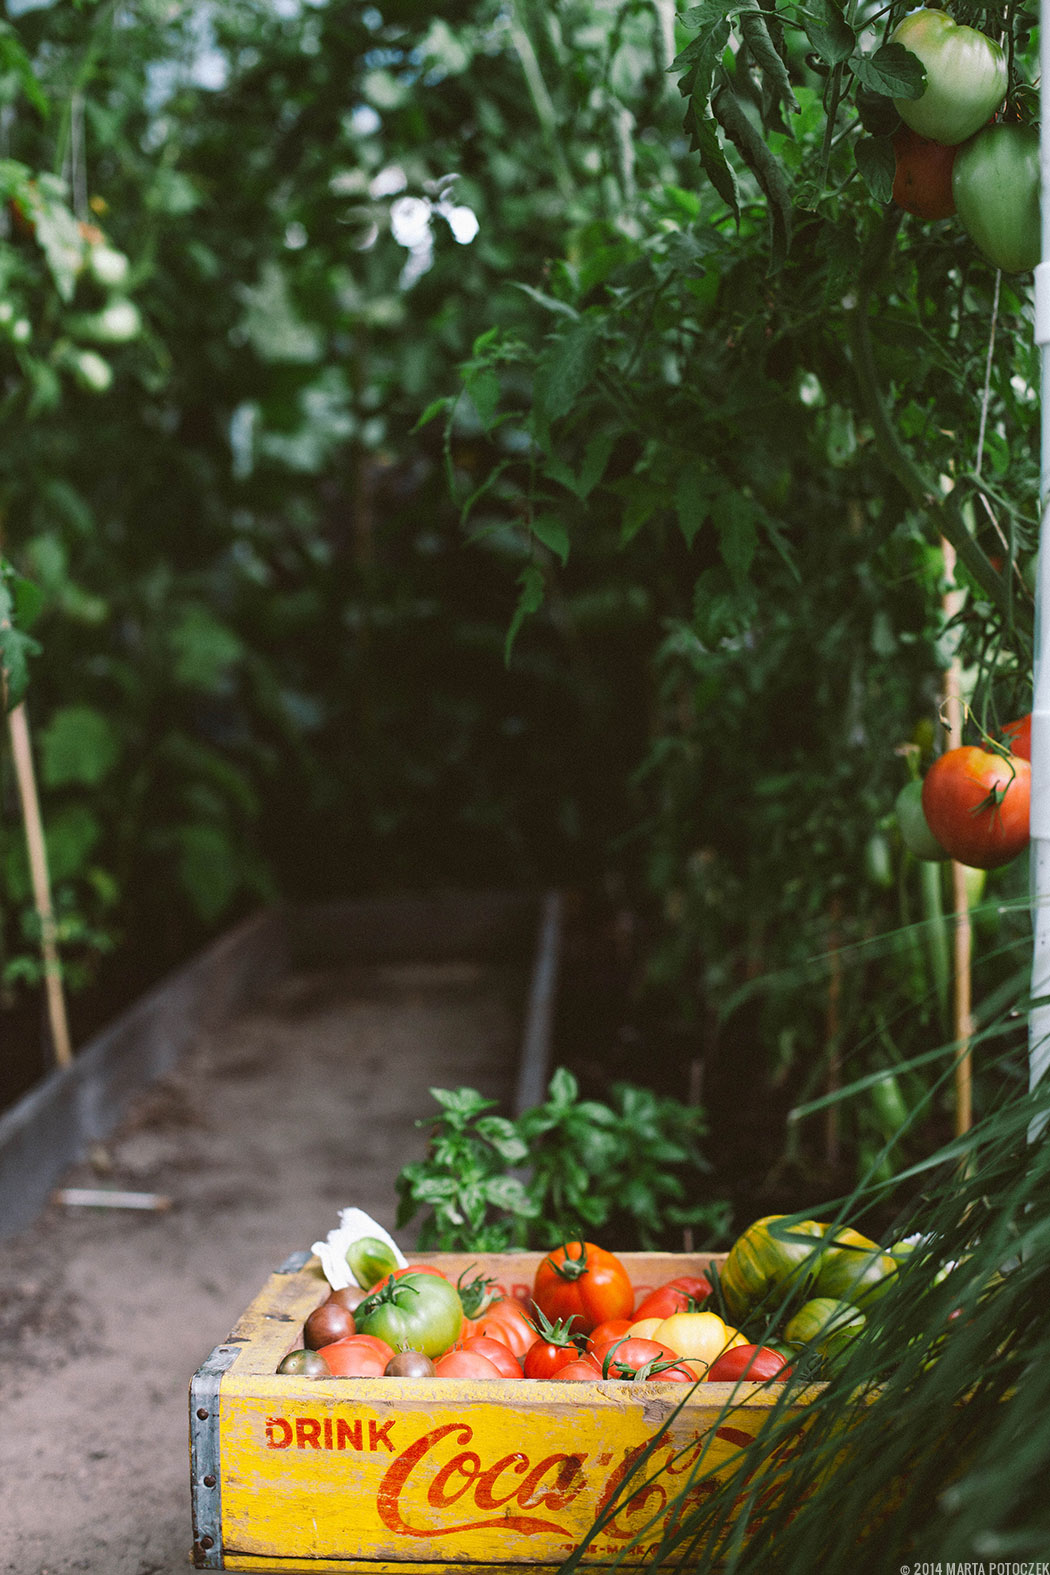 uprawa pomidorów